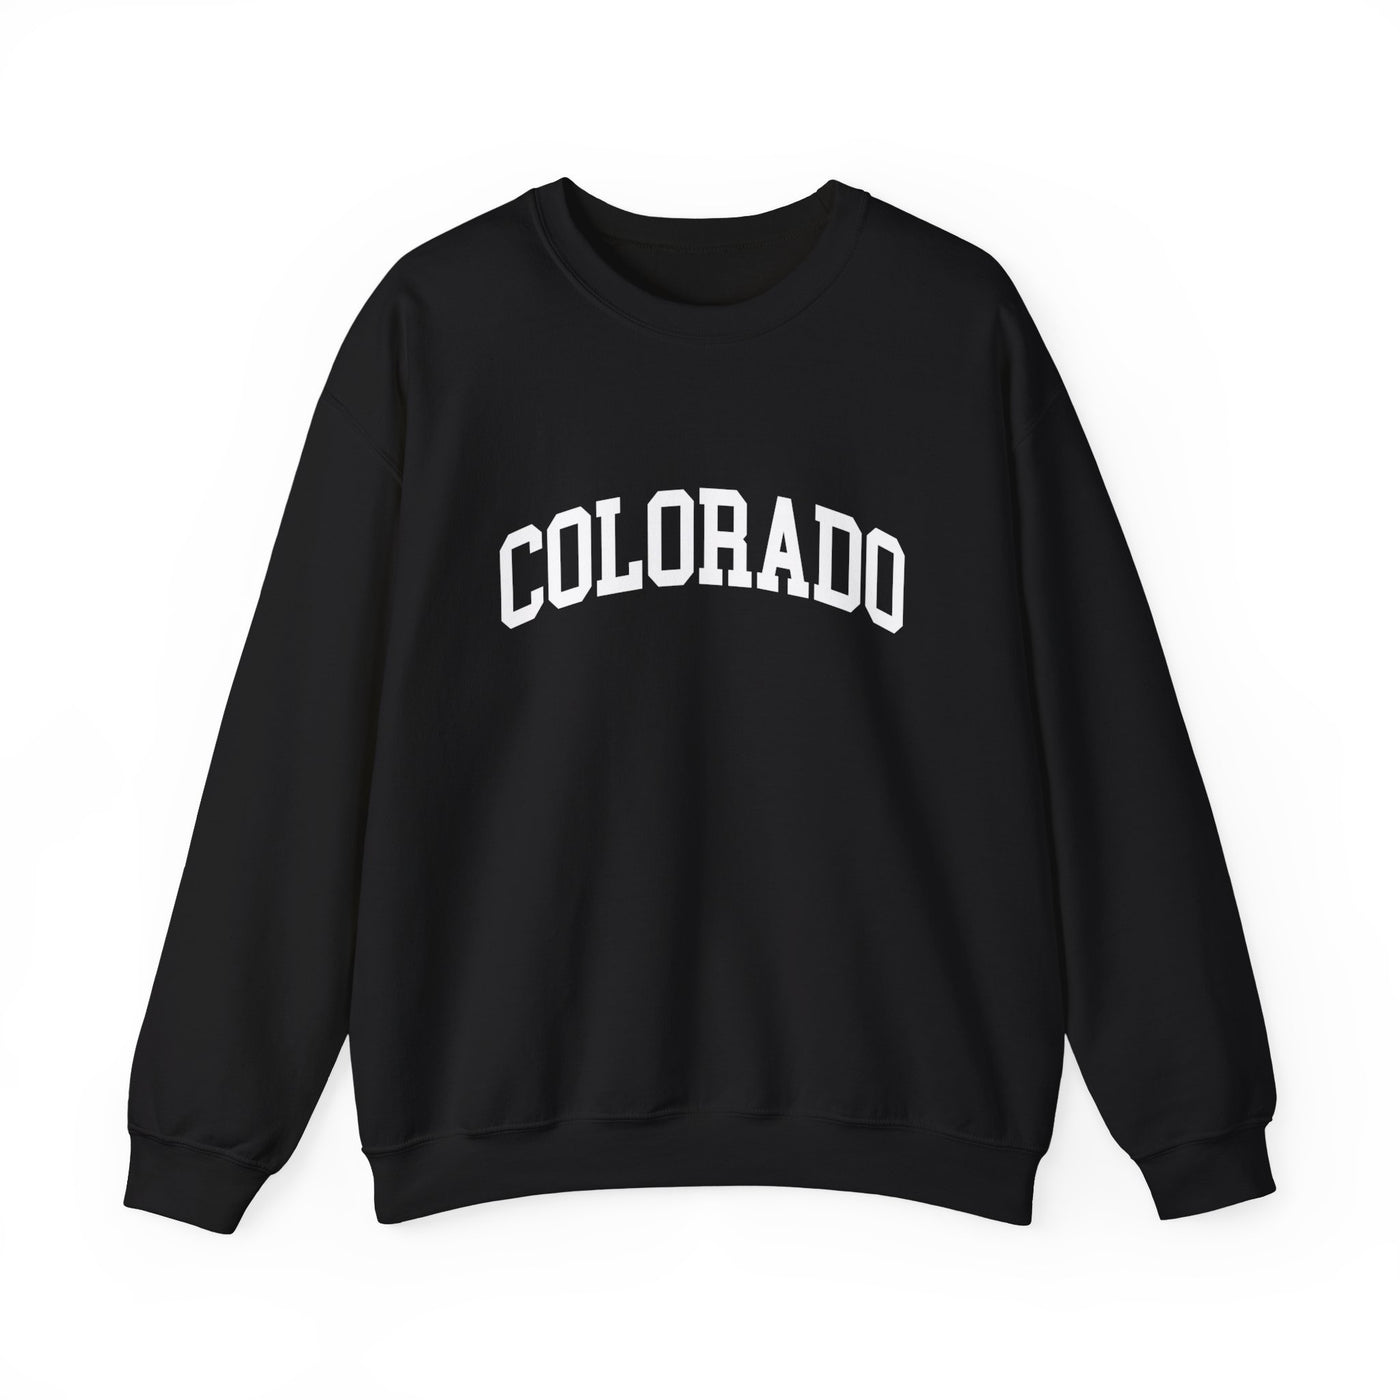 Colorado Collegiate Crewneck Sweatshirt